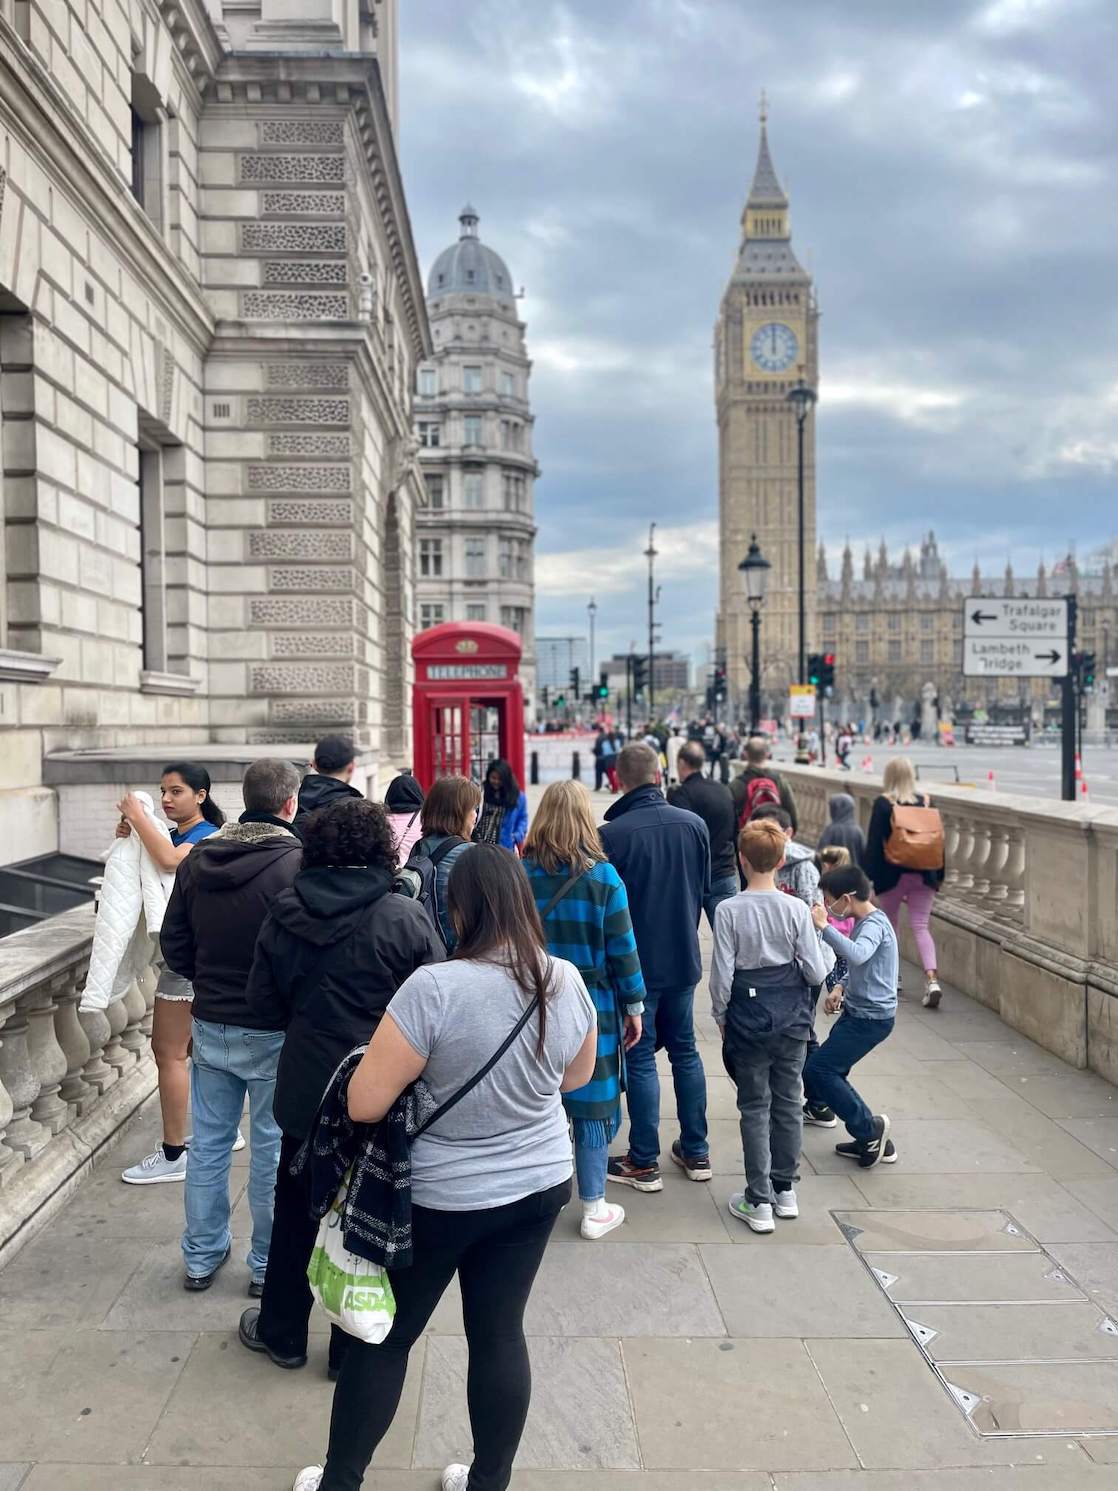 La gente haciendo una cola para sacar fotos en una cabina telefónica roja cerca del Big Ben en Londres